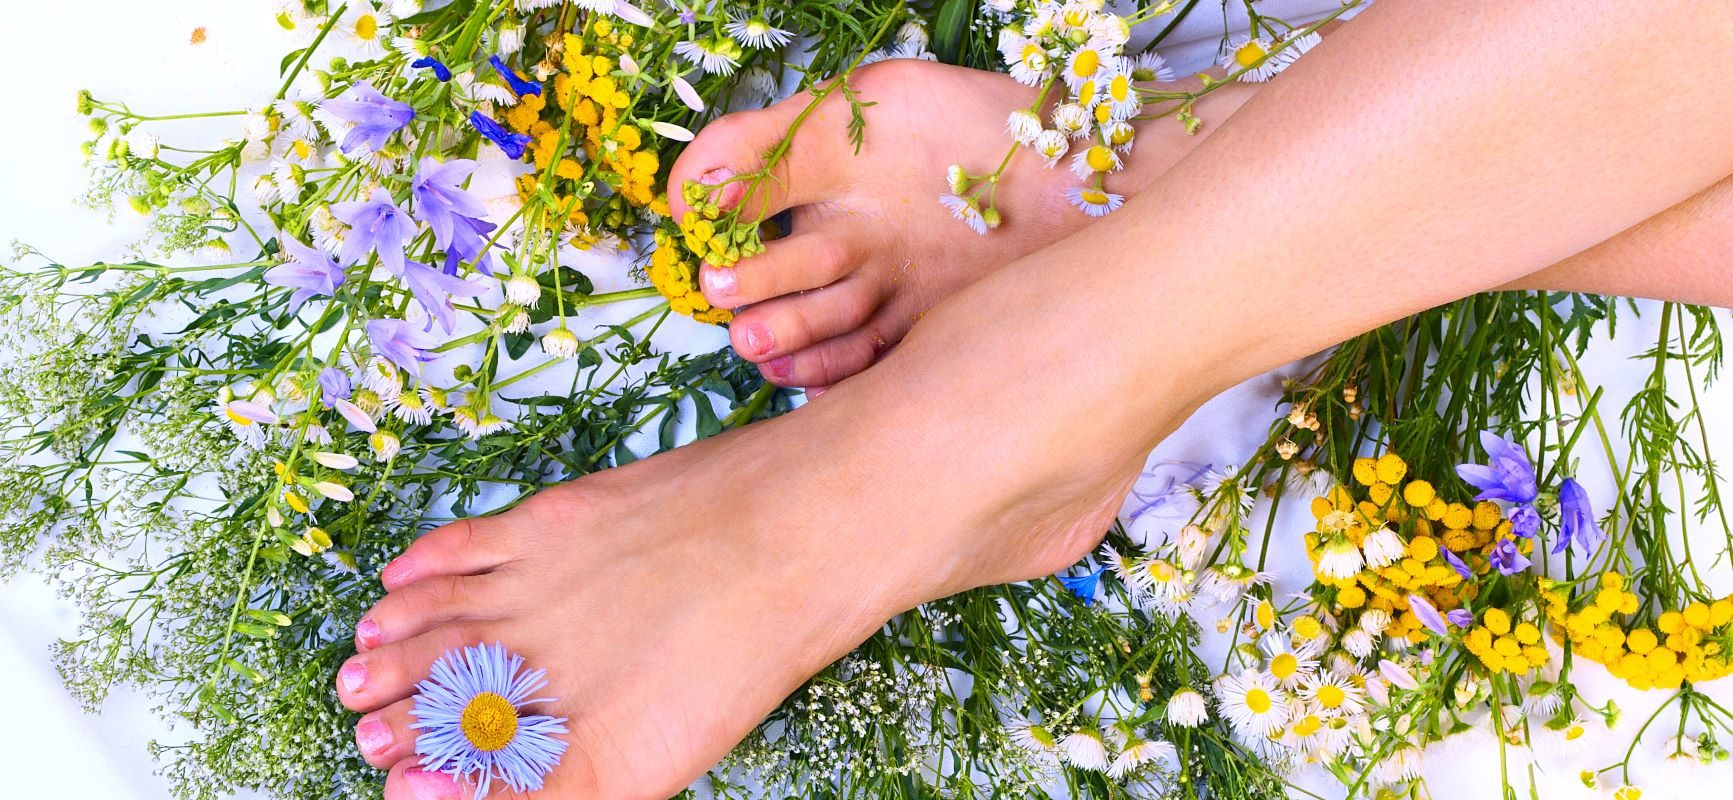 Poznaj domowe sposoby na grzybicę stóp. Jak ją zwalczyć naturalnie? Zadbane stopy wśród polnych kwiatów na białym tle.